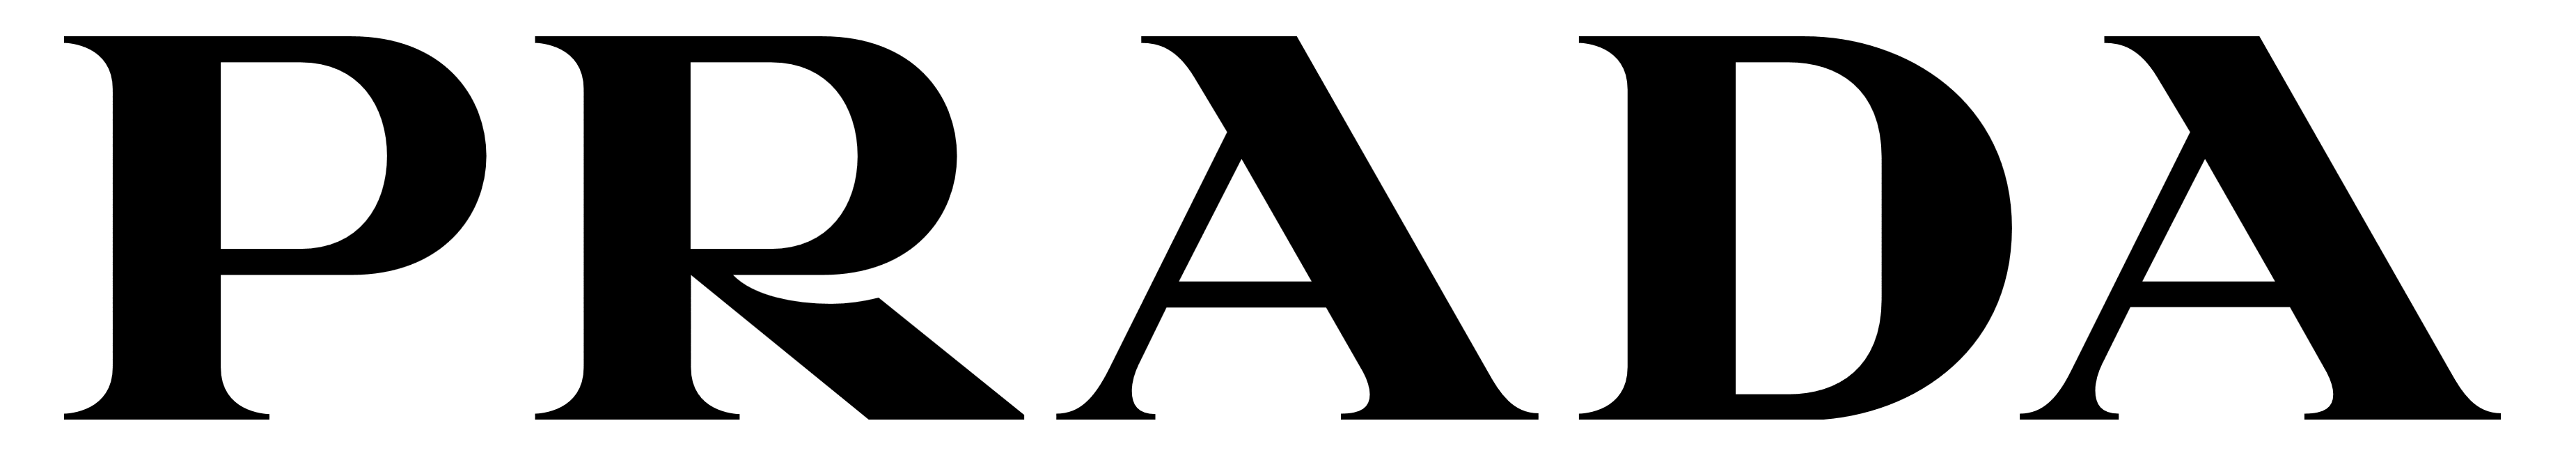 Prada logo, logotype